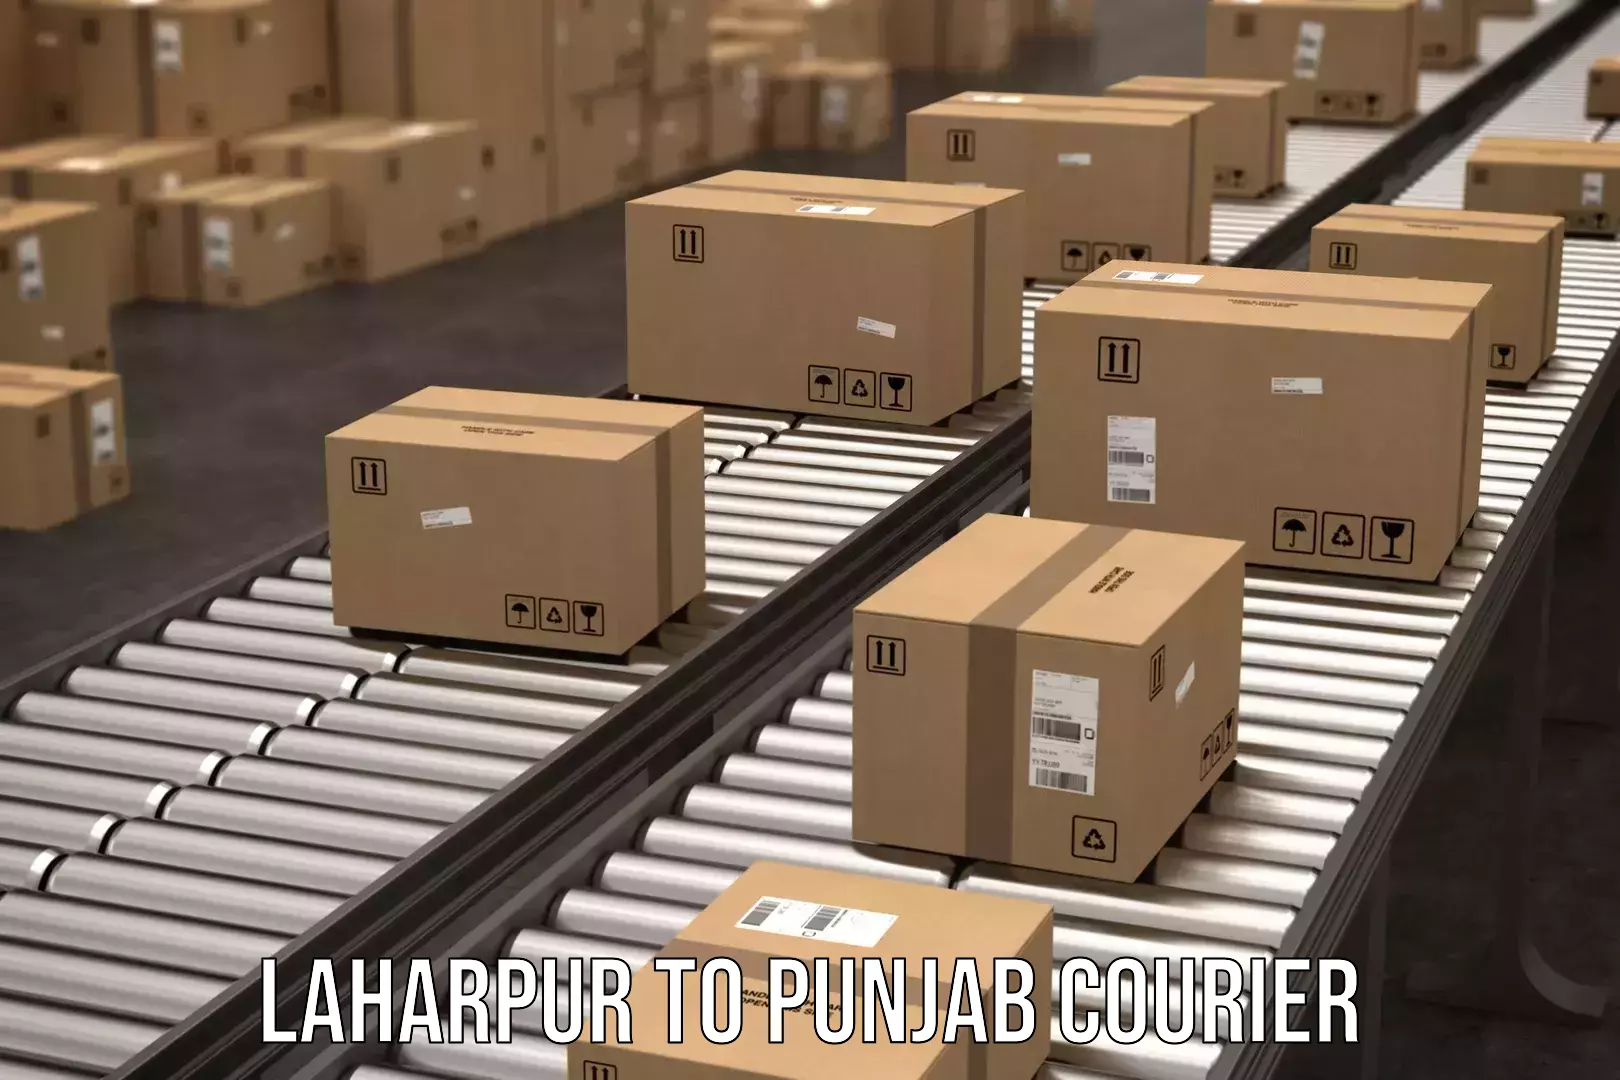 Multi-city courier Laharpur to Jalandhar